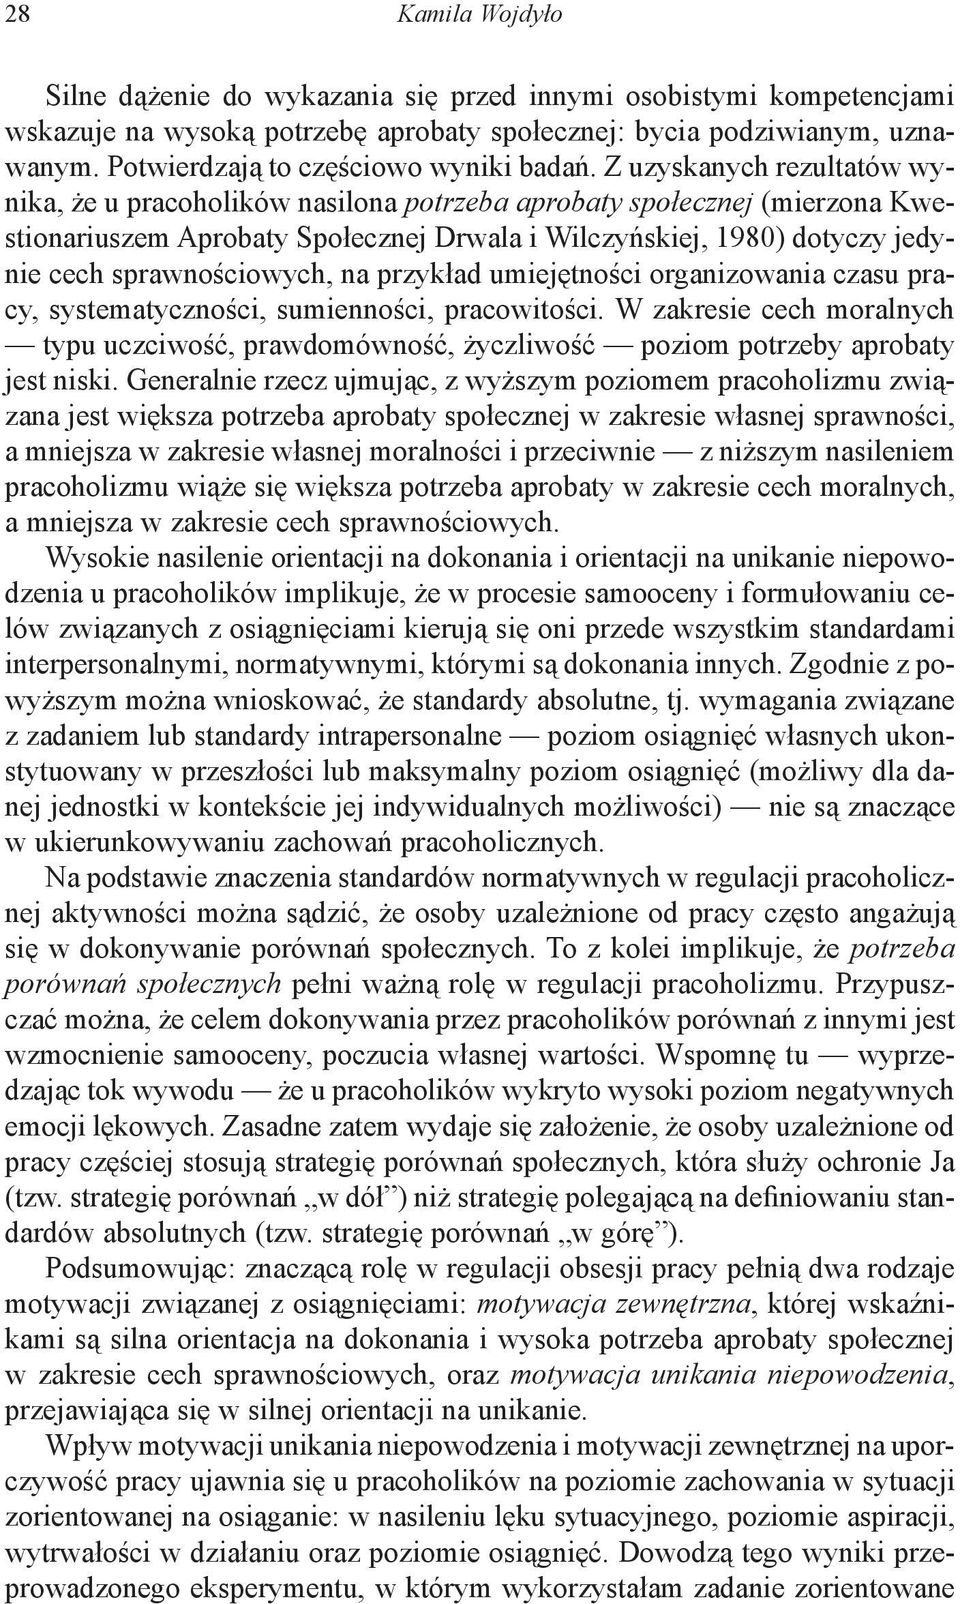 Z uzyskanych rezultatów wynika, że u pracoholików nasilona potrzeba aprobaty społecznej (mierzona Kwestionariuszem Aprobaty Społecznej Drwala i Wilczyńskiej, 1980) dotyczy jedynie cech